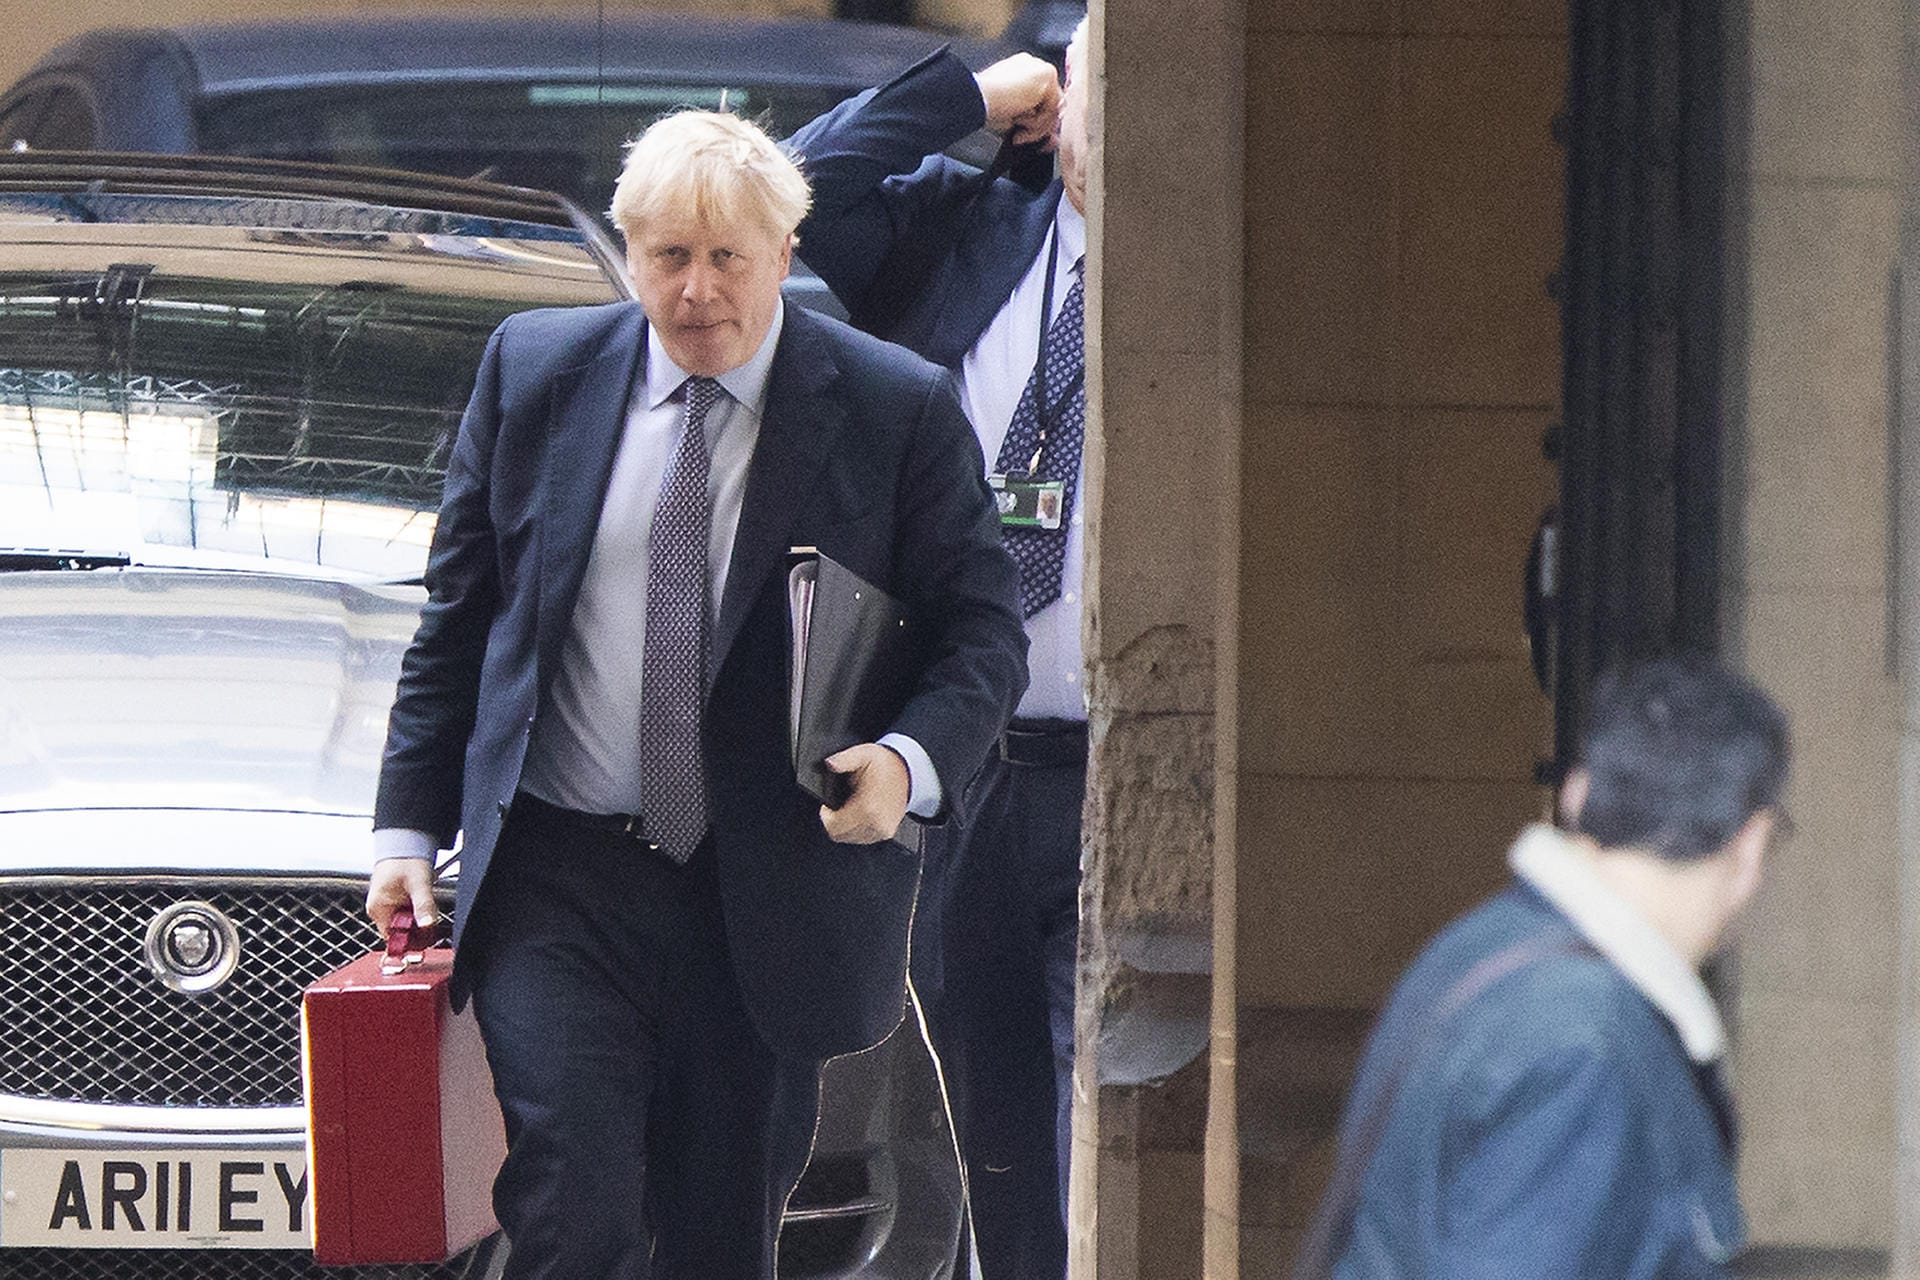 19. Oktober: Niederlage für Boris Johnson. Das Unterhaus vertagt die Abstimmung über das neue Abkommen und zwingt damit Johnson, erneut eine Verschiebung des Brexit-Termins zu bitten. Johnson schickt einen Antrag auf Verlängerung an Donald Tusk und ein weiteres Schreiben, in dem er um die Ablehnung der Verlängerung bittet.